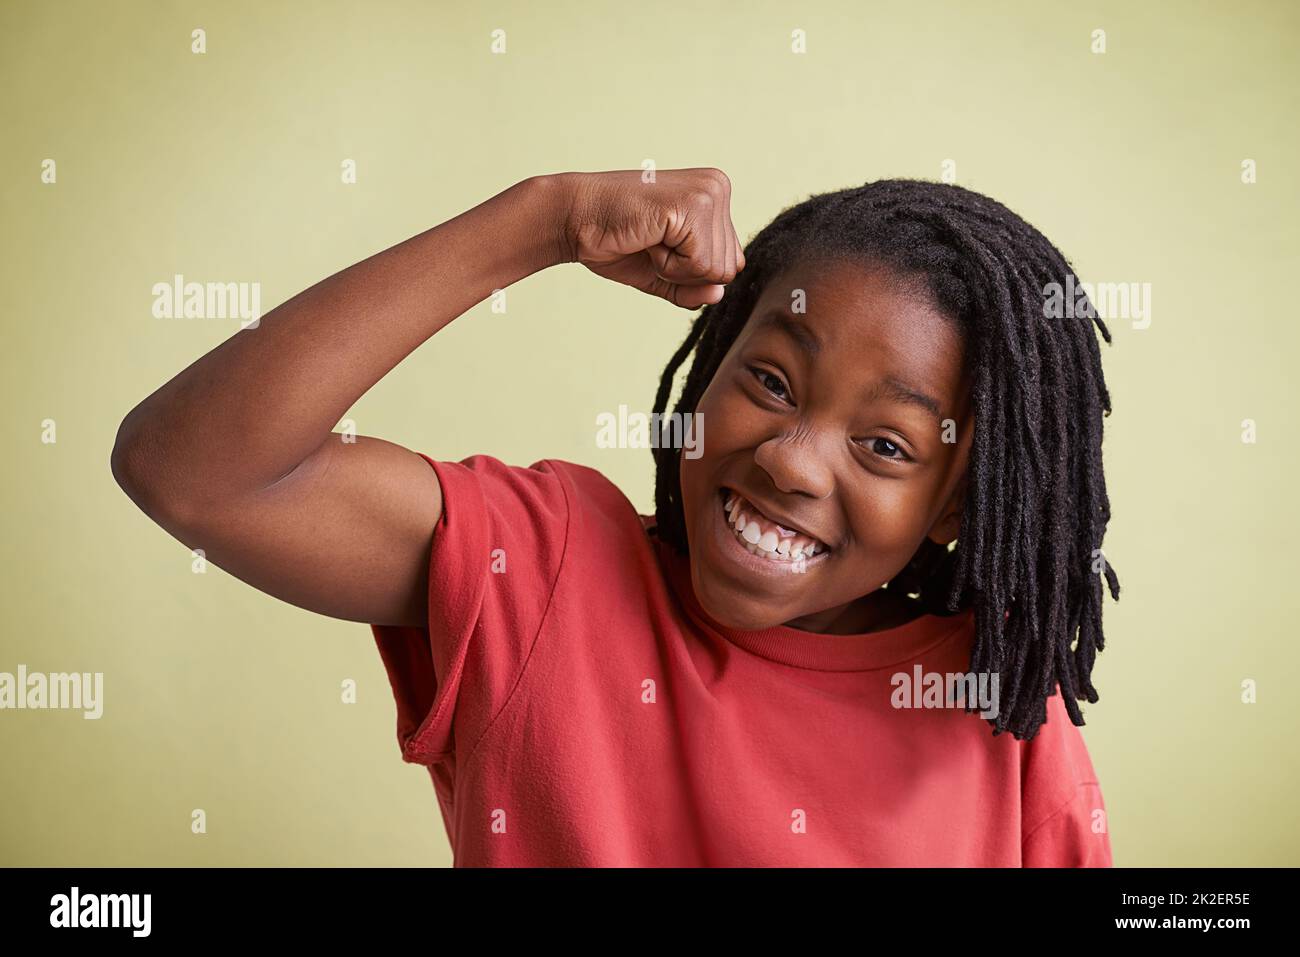 Überprüfen Sie diese Muskeln aus. Studioportrait eines Jungen, der seine Muskeln zeigt. Stockfoto